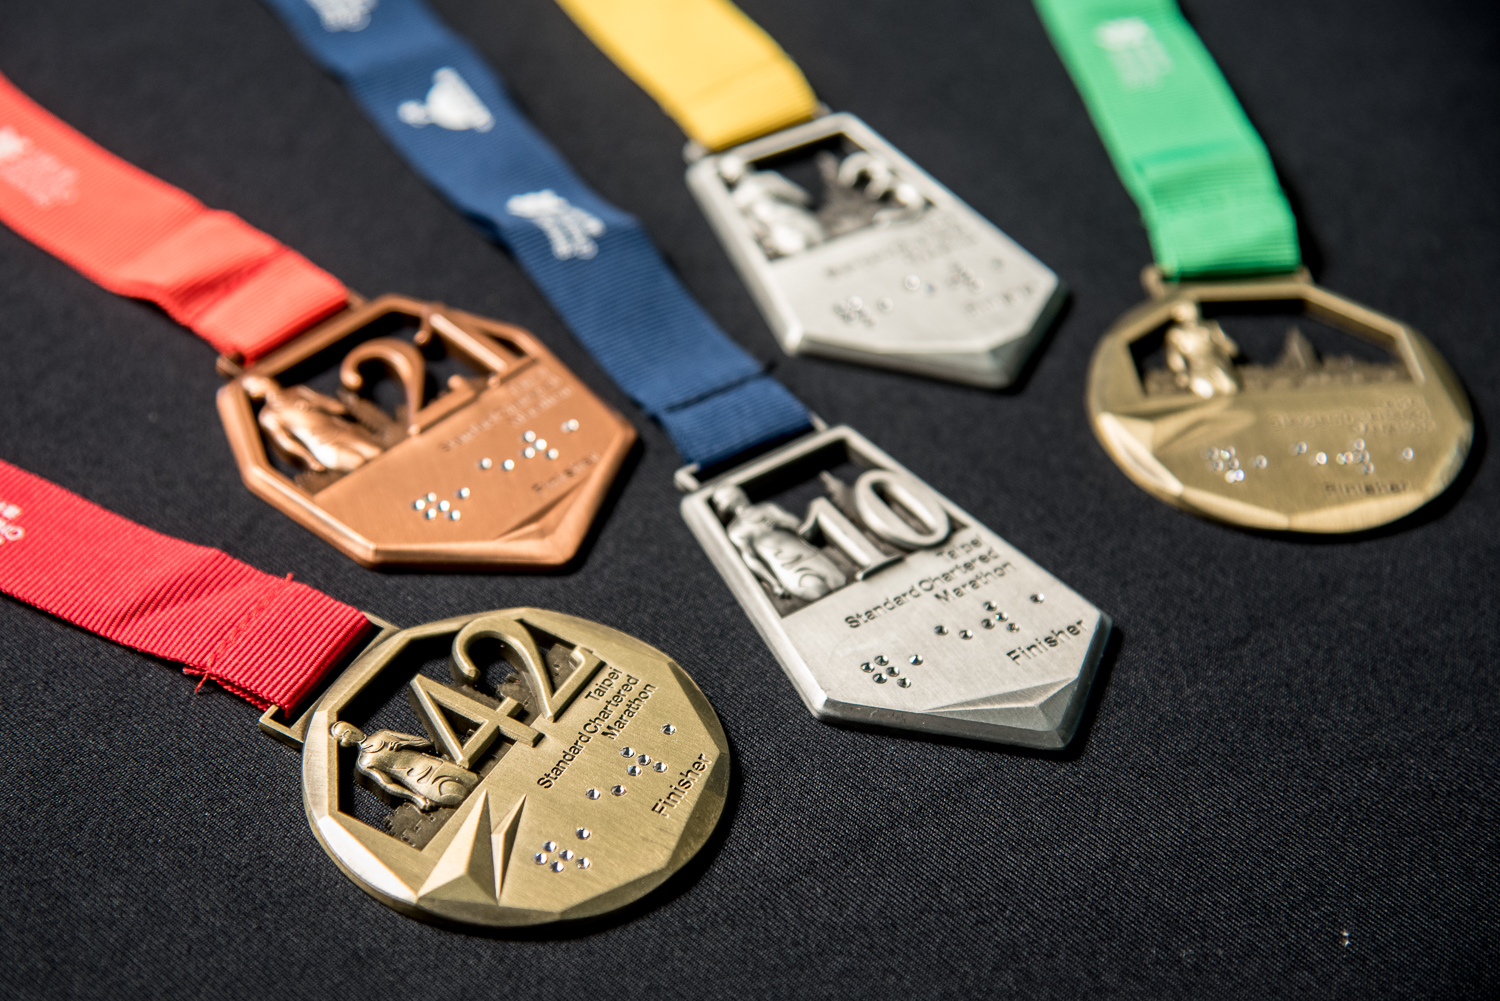 「2017臺北渣打公益馬拉松」展示全台首枚水晶點字完賽獎牌，突顯賽事對視障關懷的用心，也為跑者創造別具紀念價值的賽事回憶。